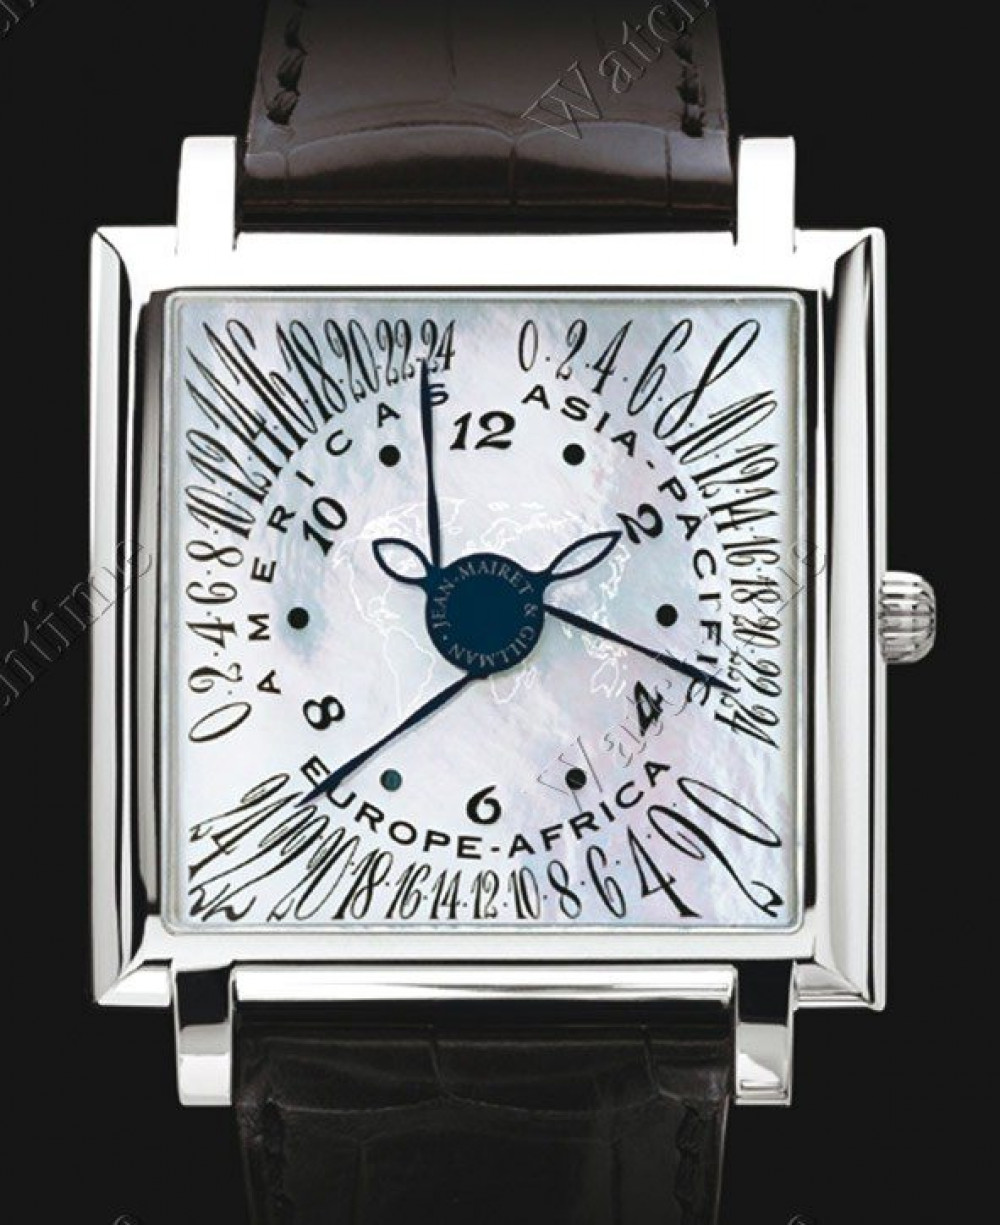 Zegarek firmy Jean-Mairet & Gillmann, model Continentes